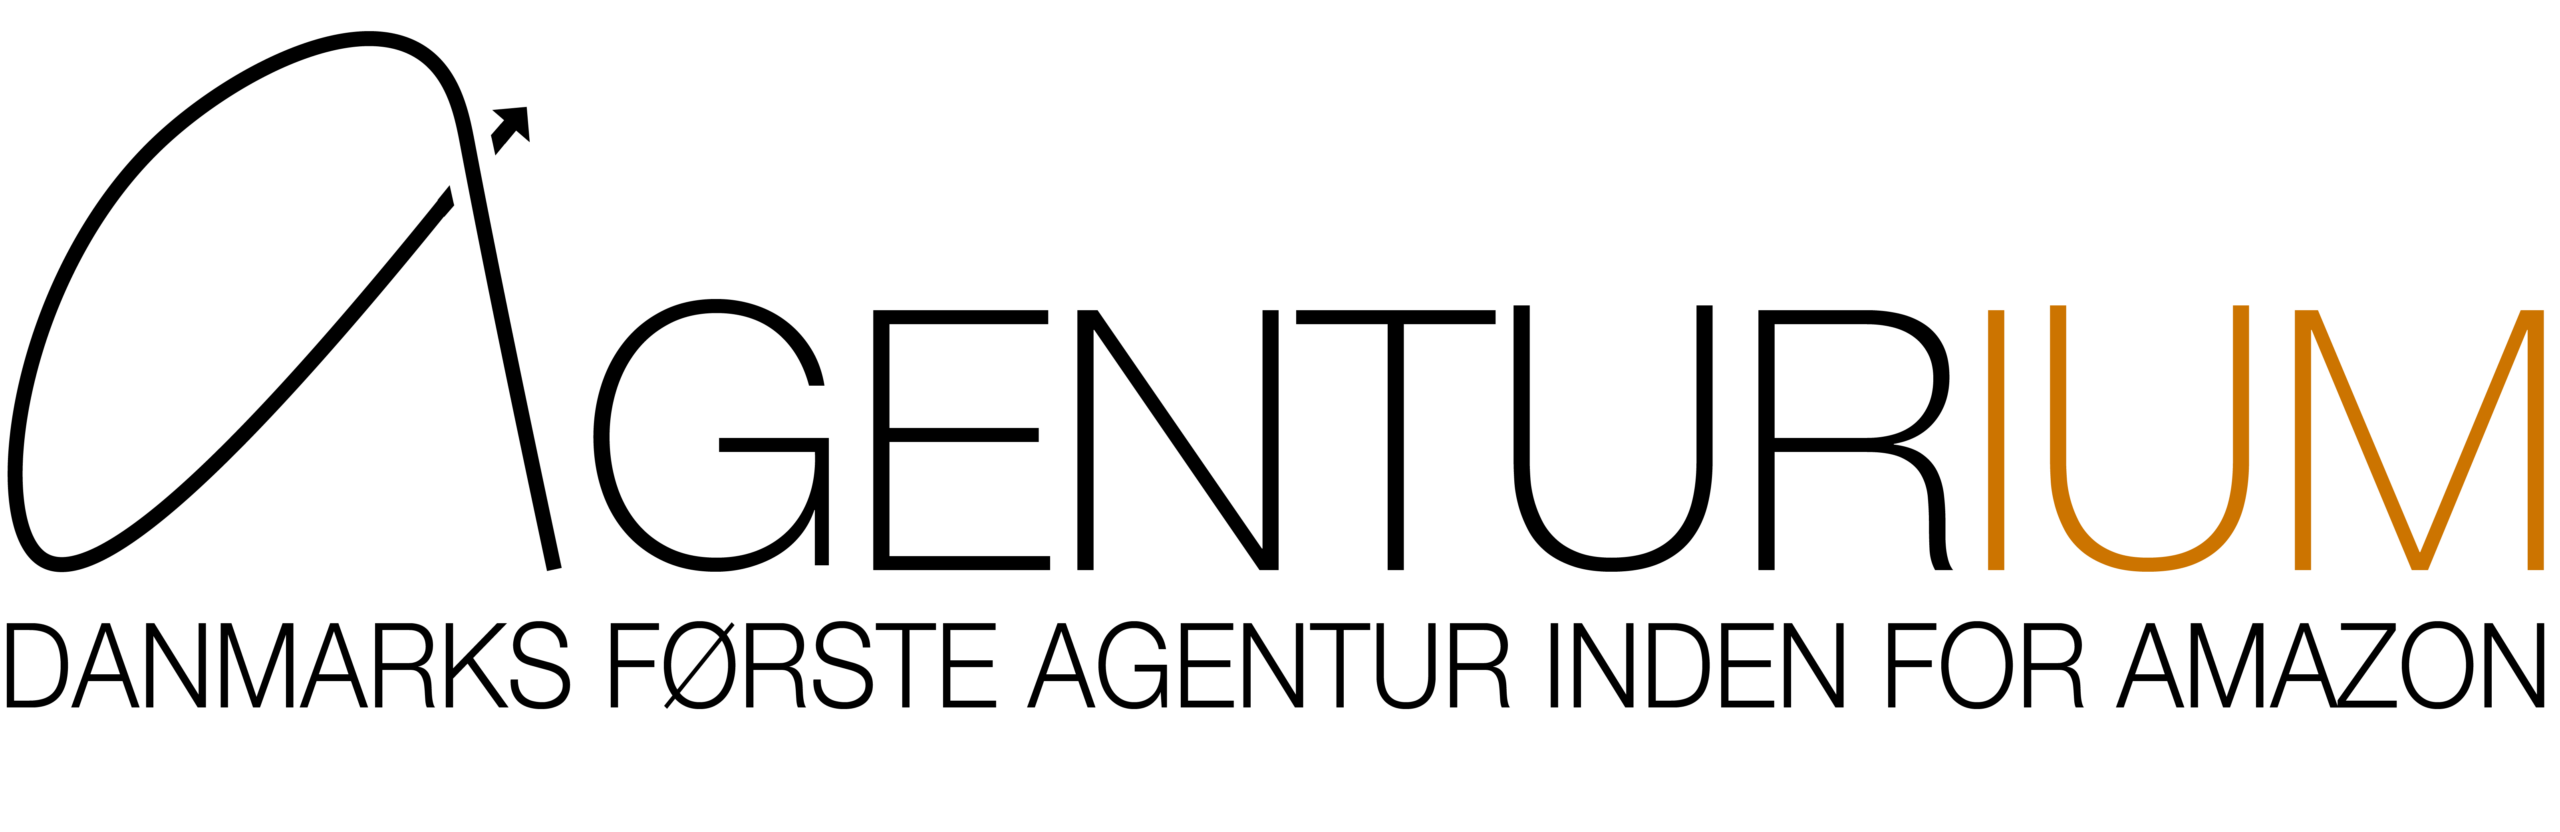 Agenturium-Logo-Lang-Sort-Tekst